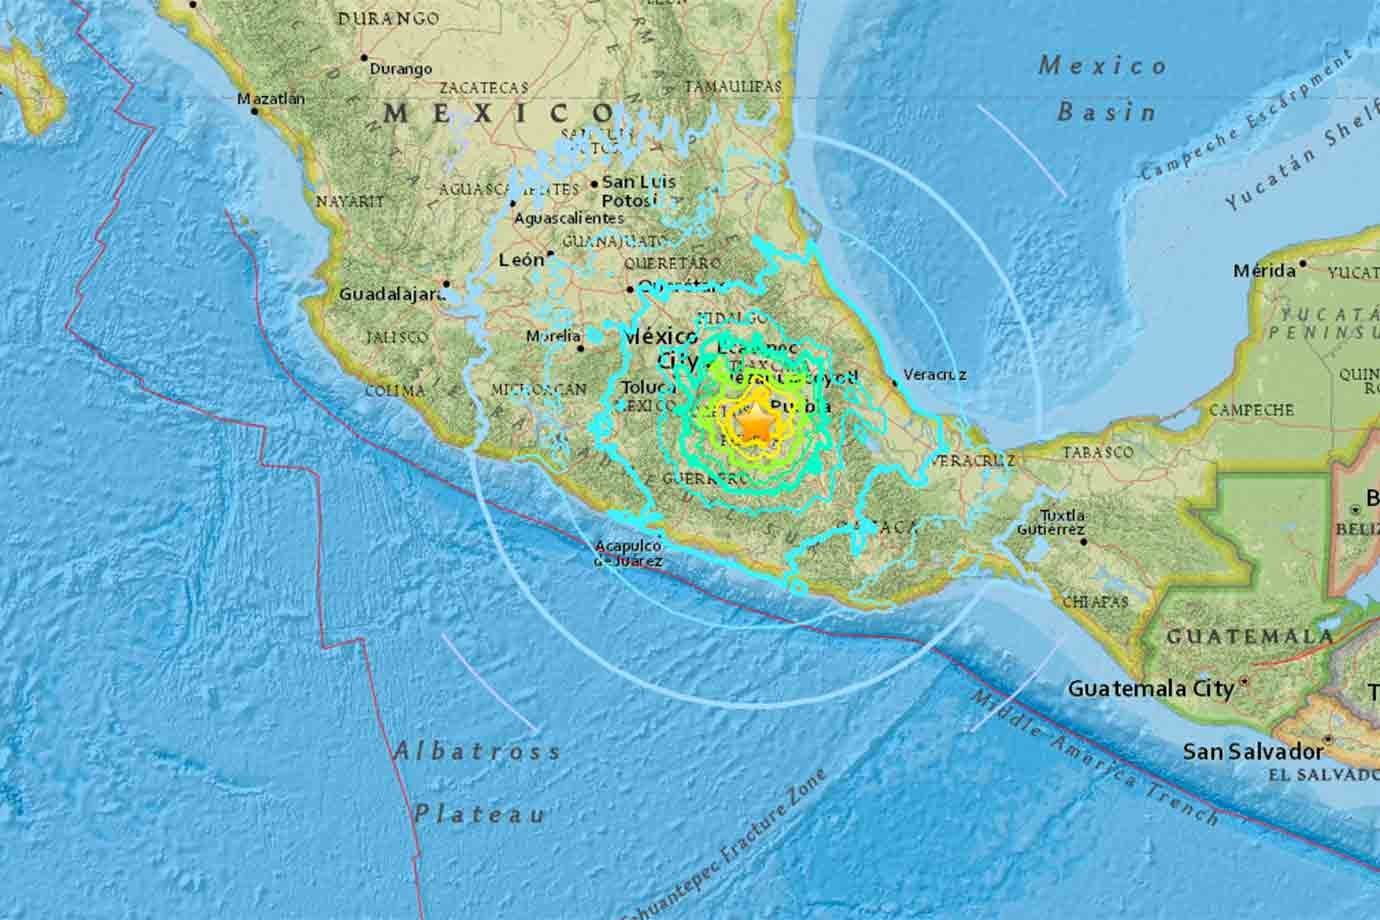 Epicentro do tremor de 7,1 graus que sacudiu a Cidade do México na tarde desta terça-feira (19).